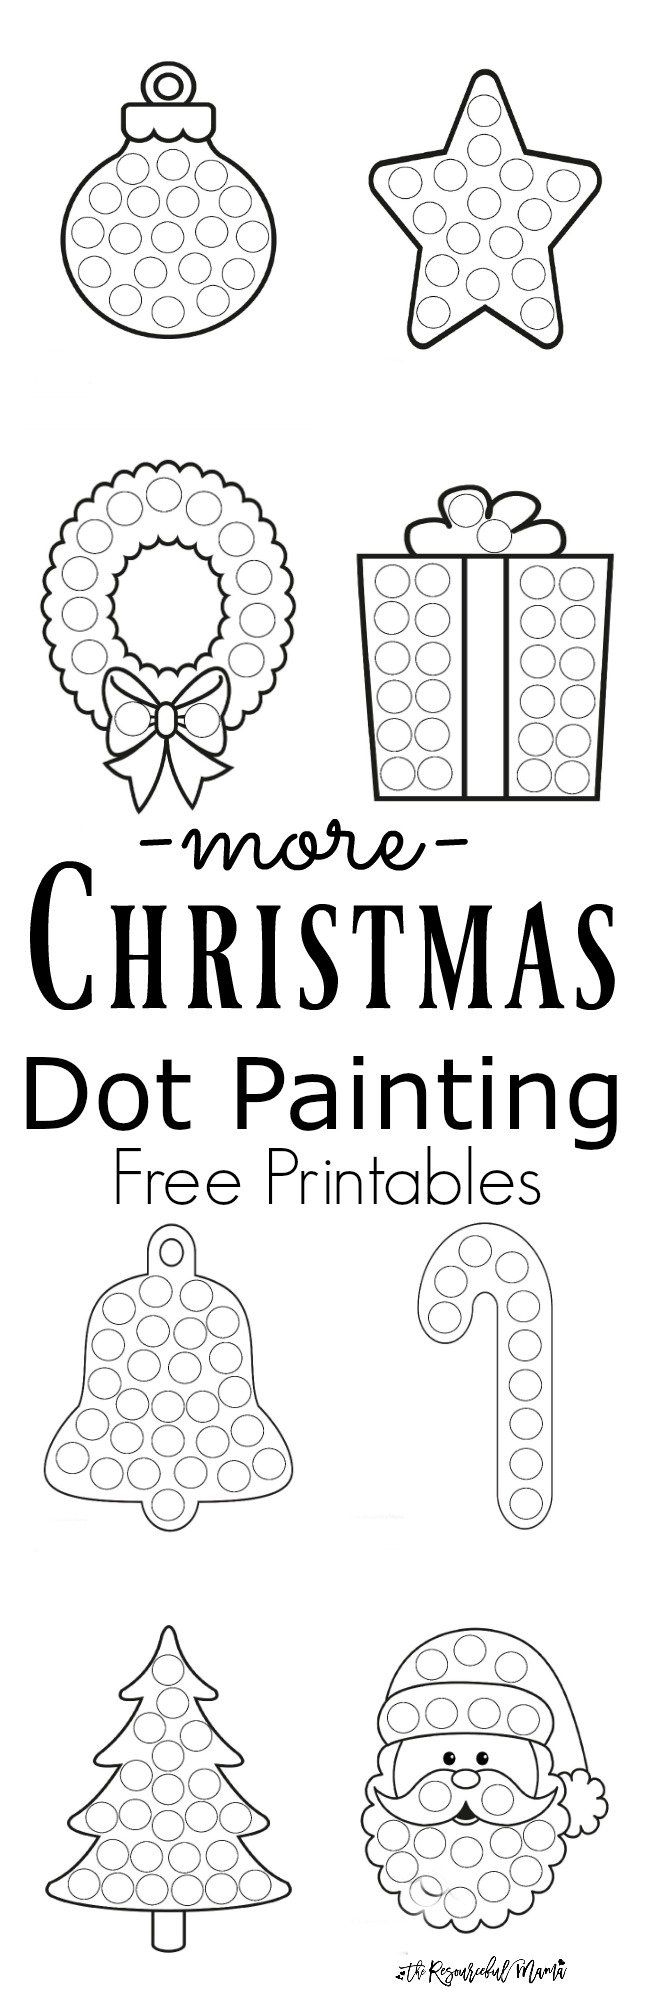 More Christmas Dot Painting Free Printables Preschool Christmas Christmas School Christmas Activities